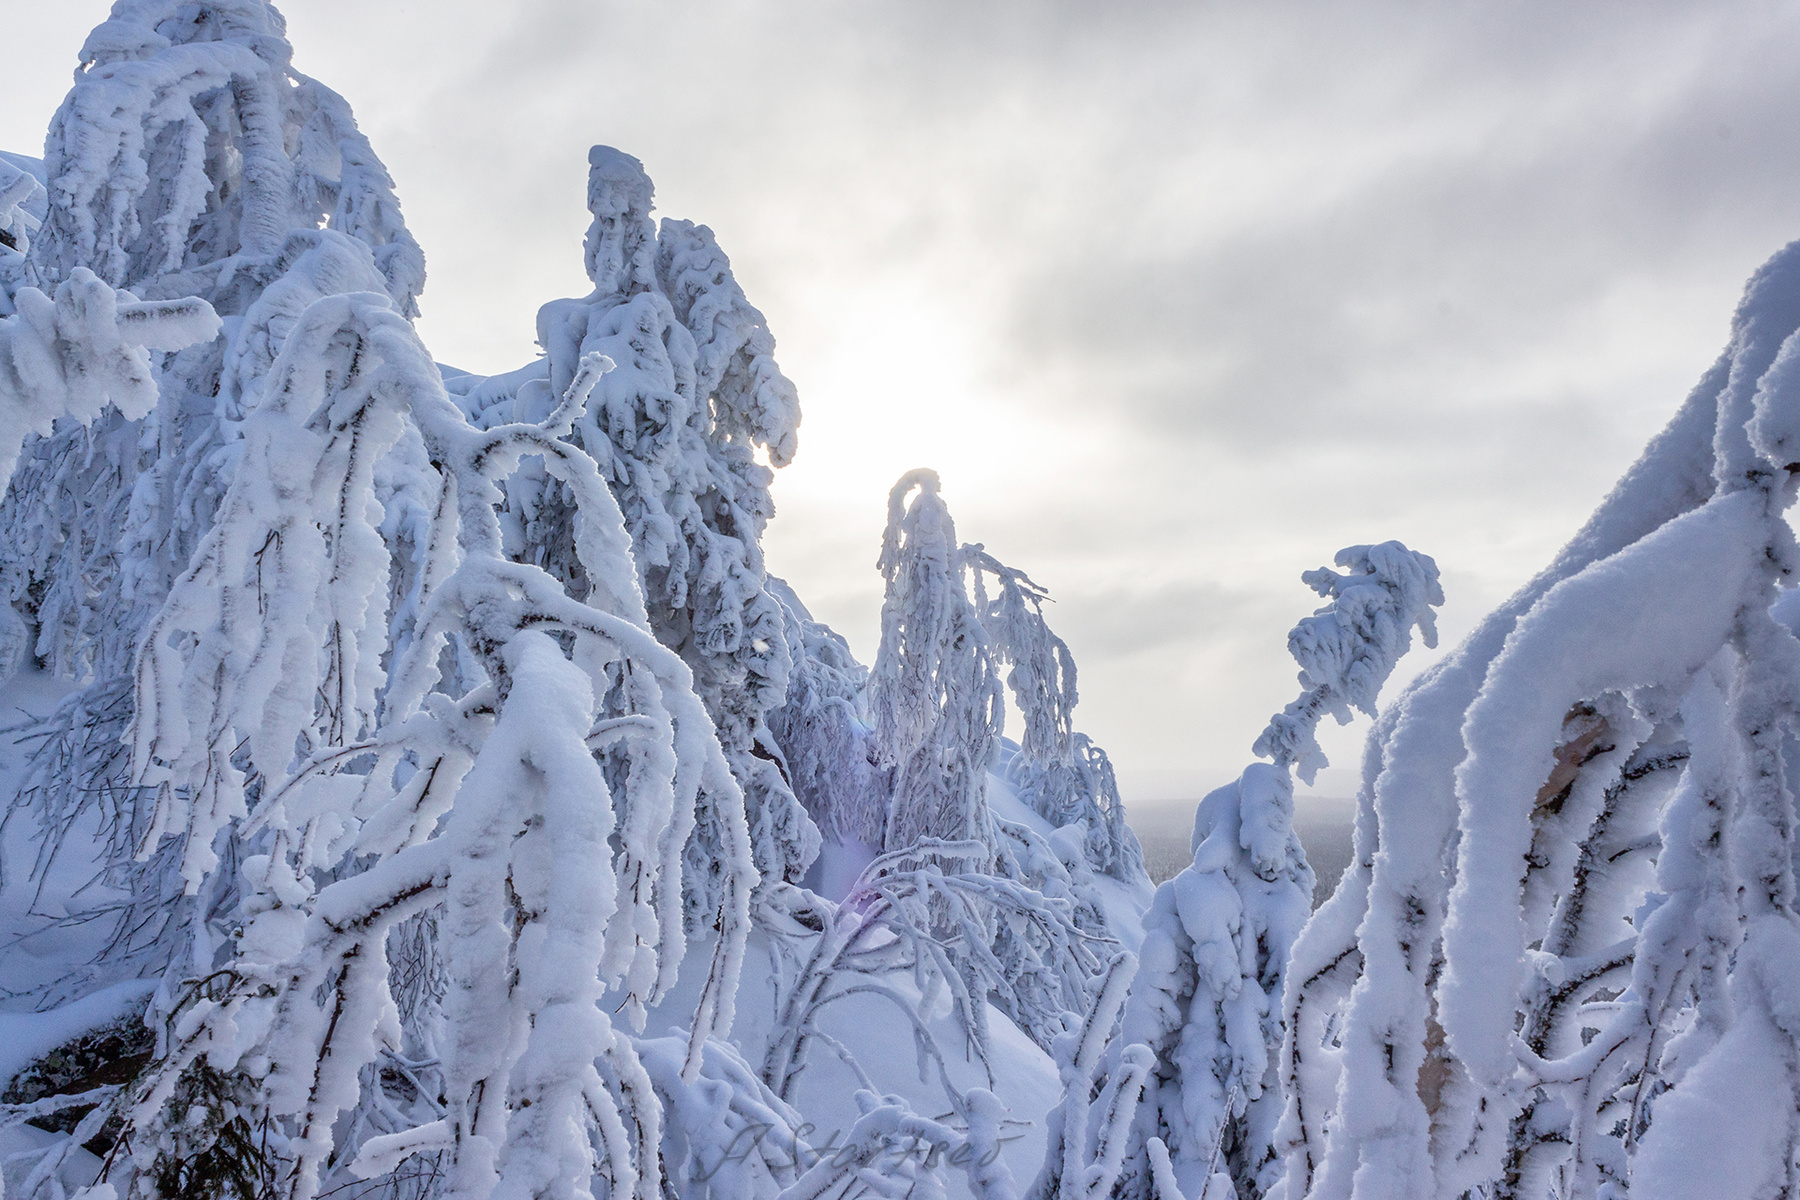 Снежное царство зима снег дерево пейзаж природа туризм Пермский_край Урал